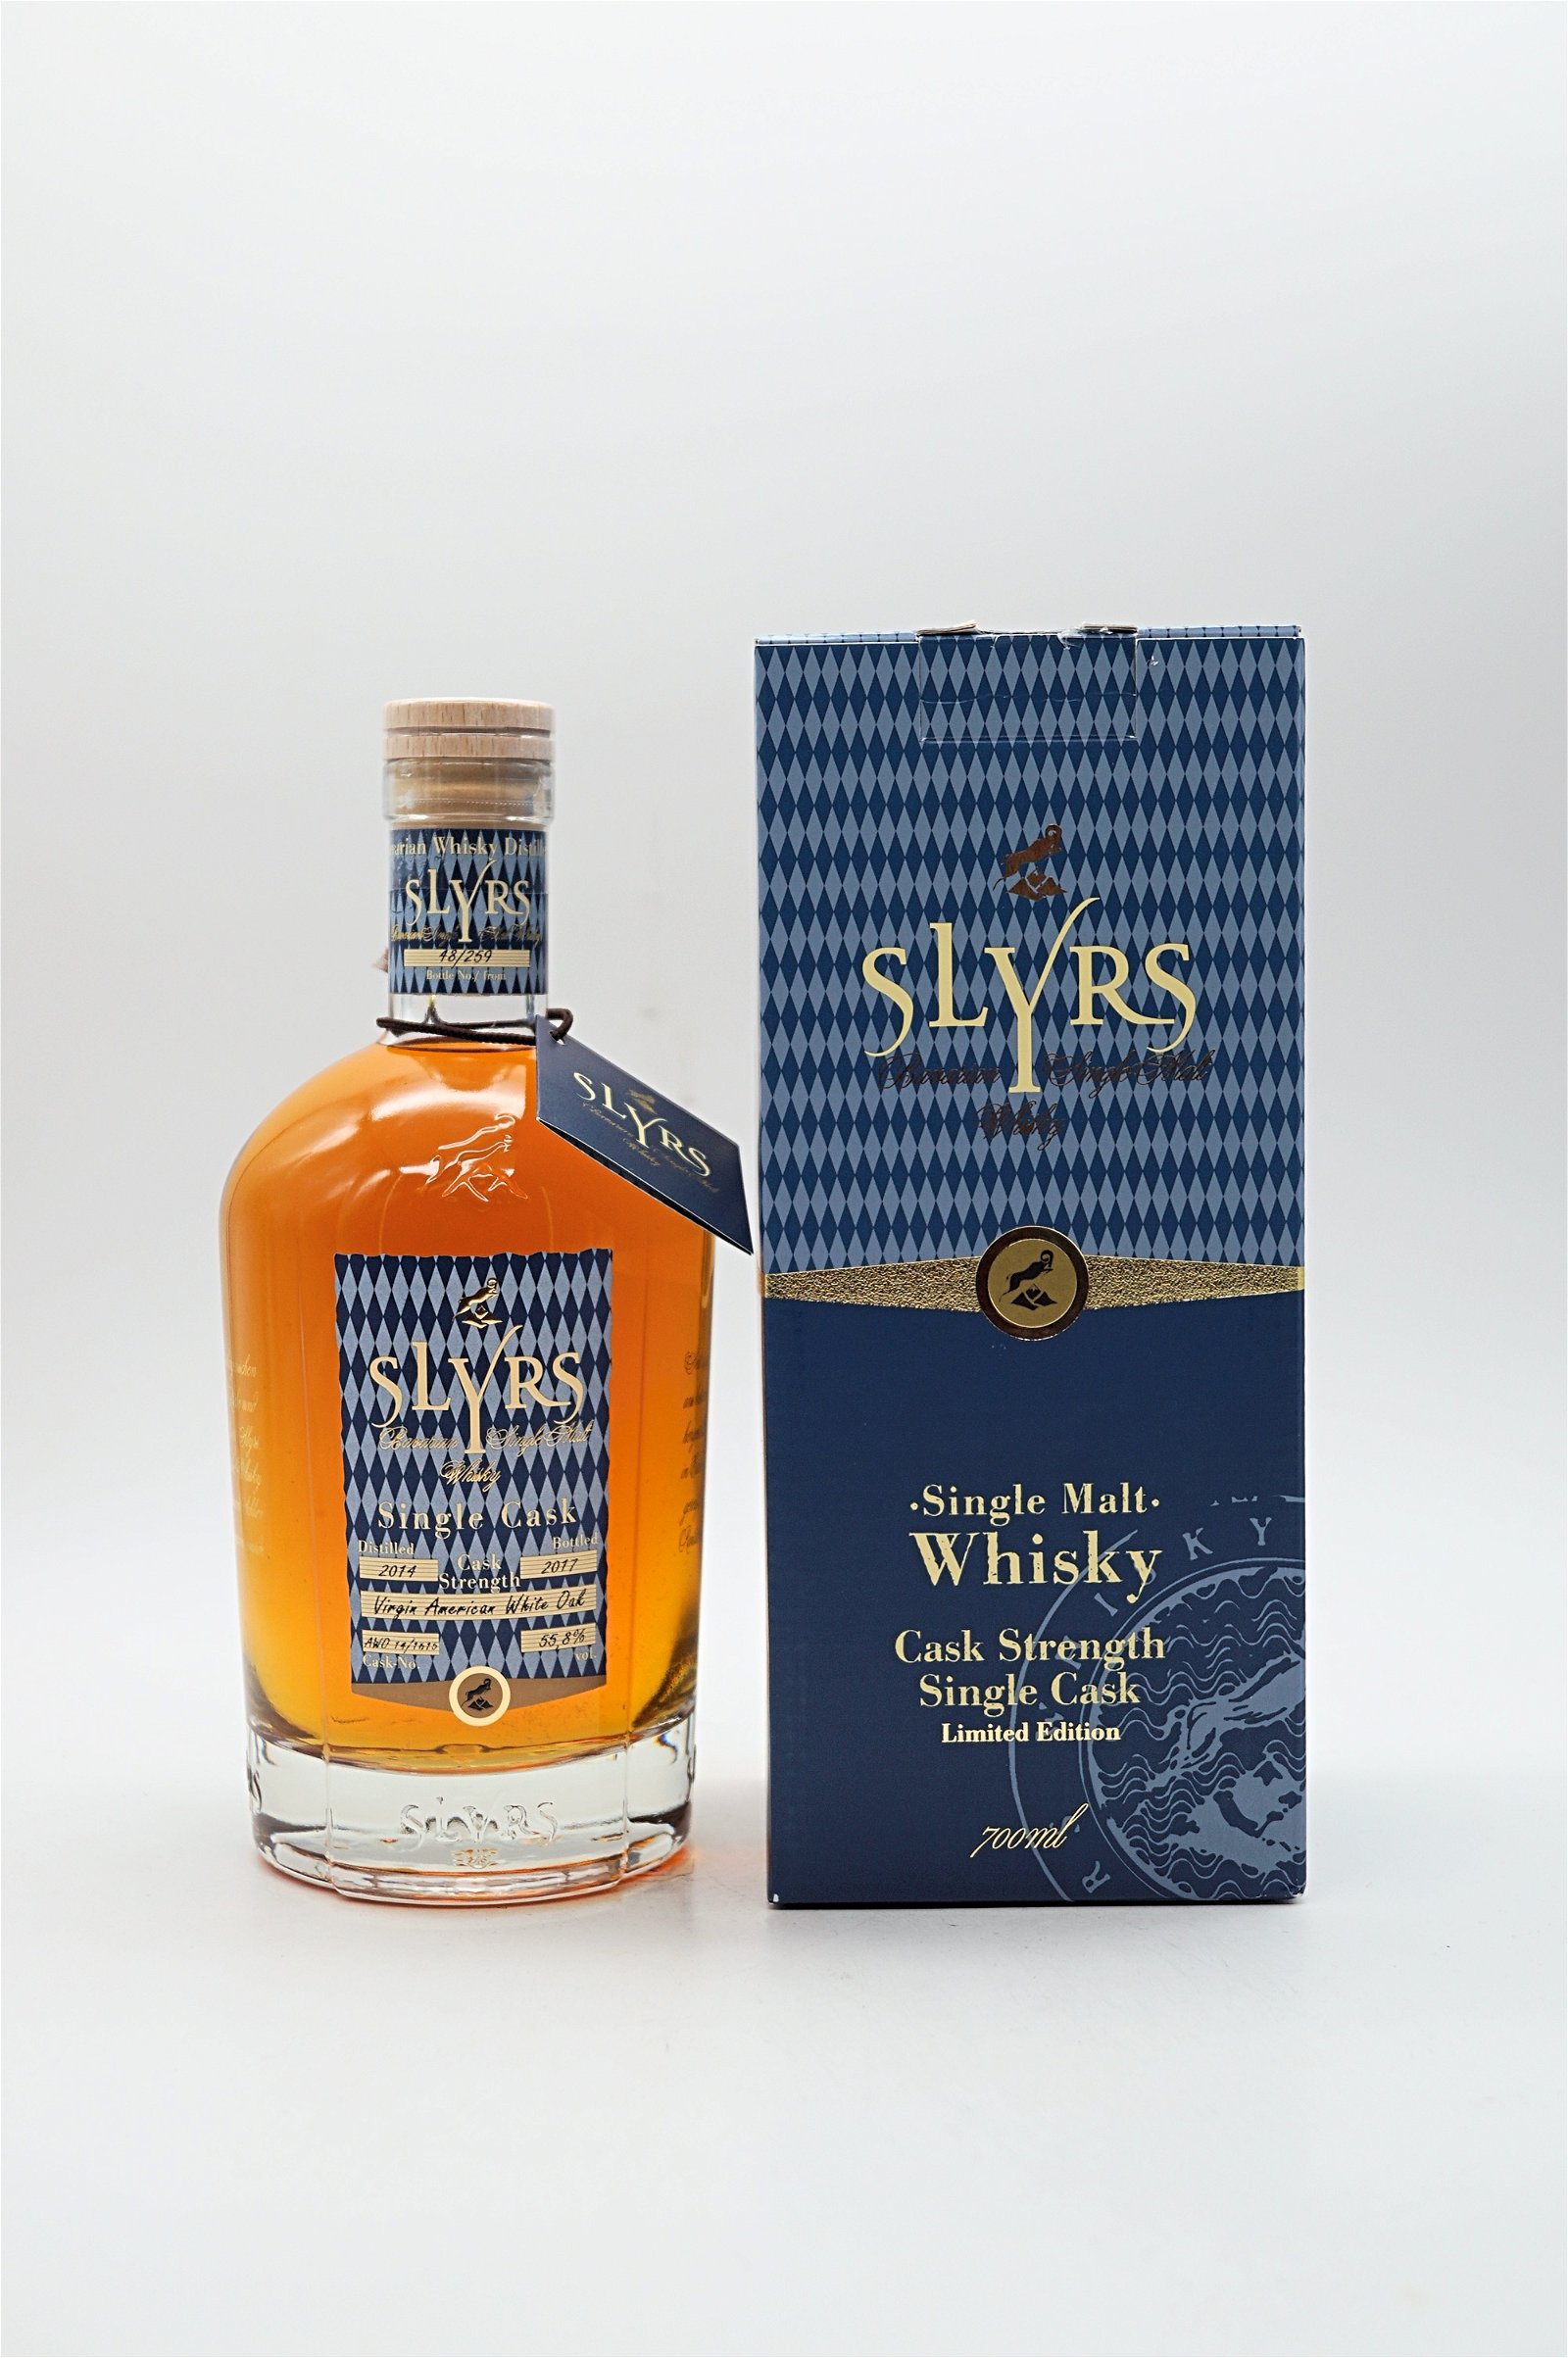 Slyrs Single Malt Whisky Cask Strength Single Cask Limited Edition